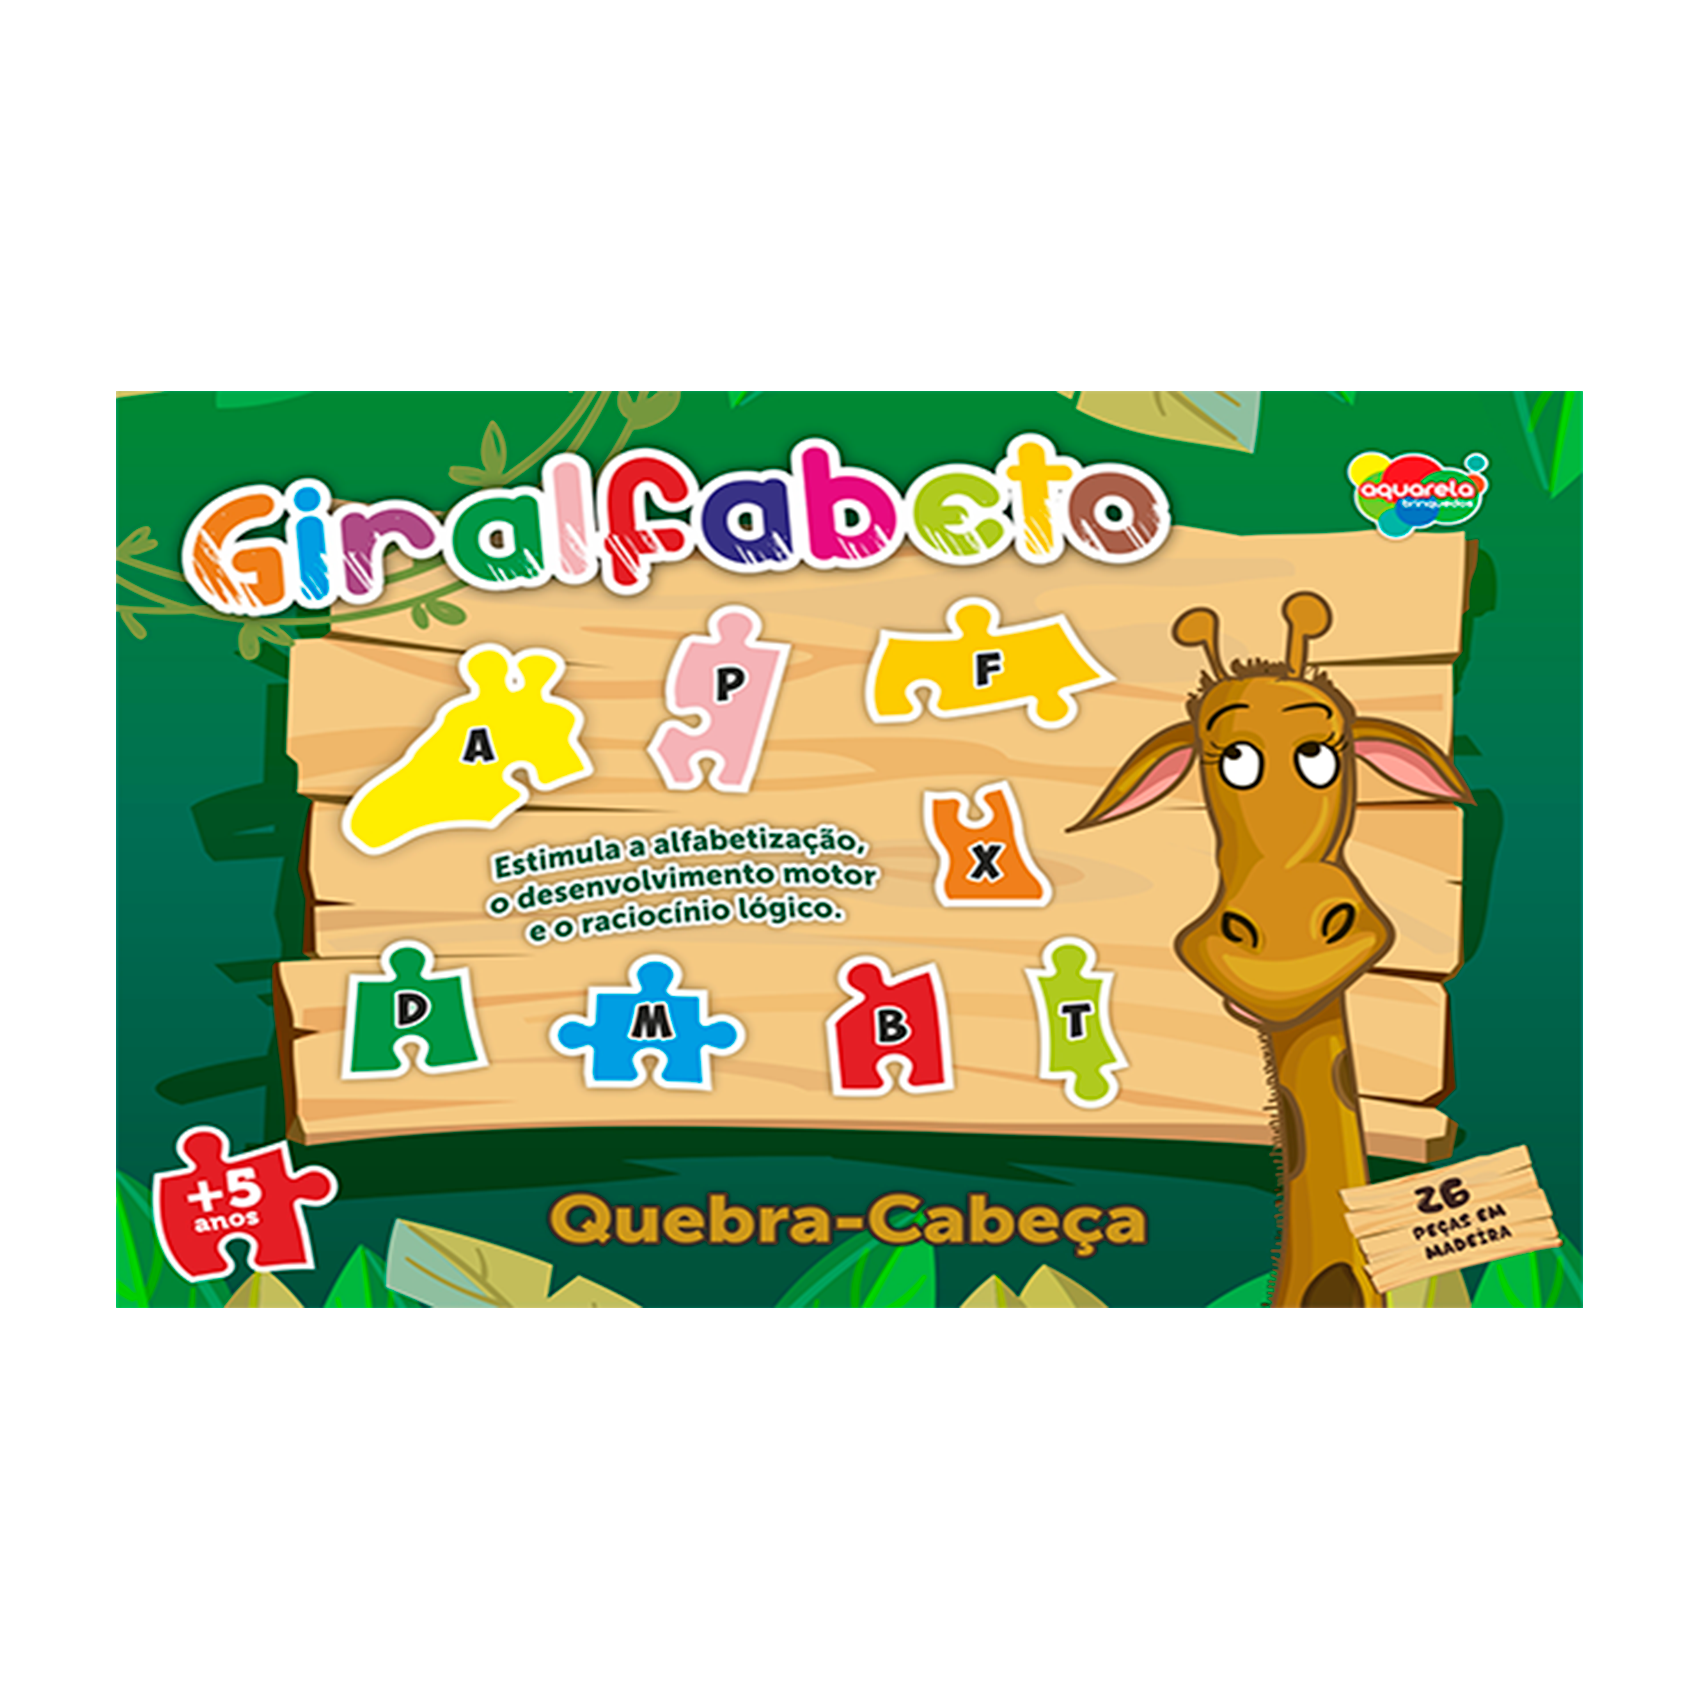 jogo de quebra-cabeça para crianças. animal girafa. peças de